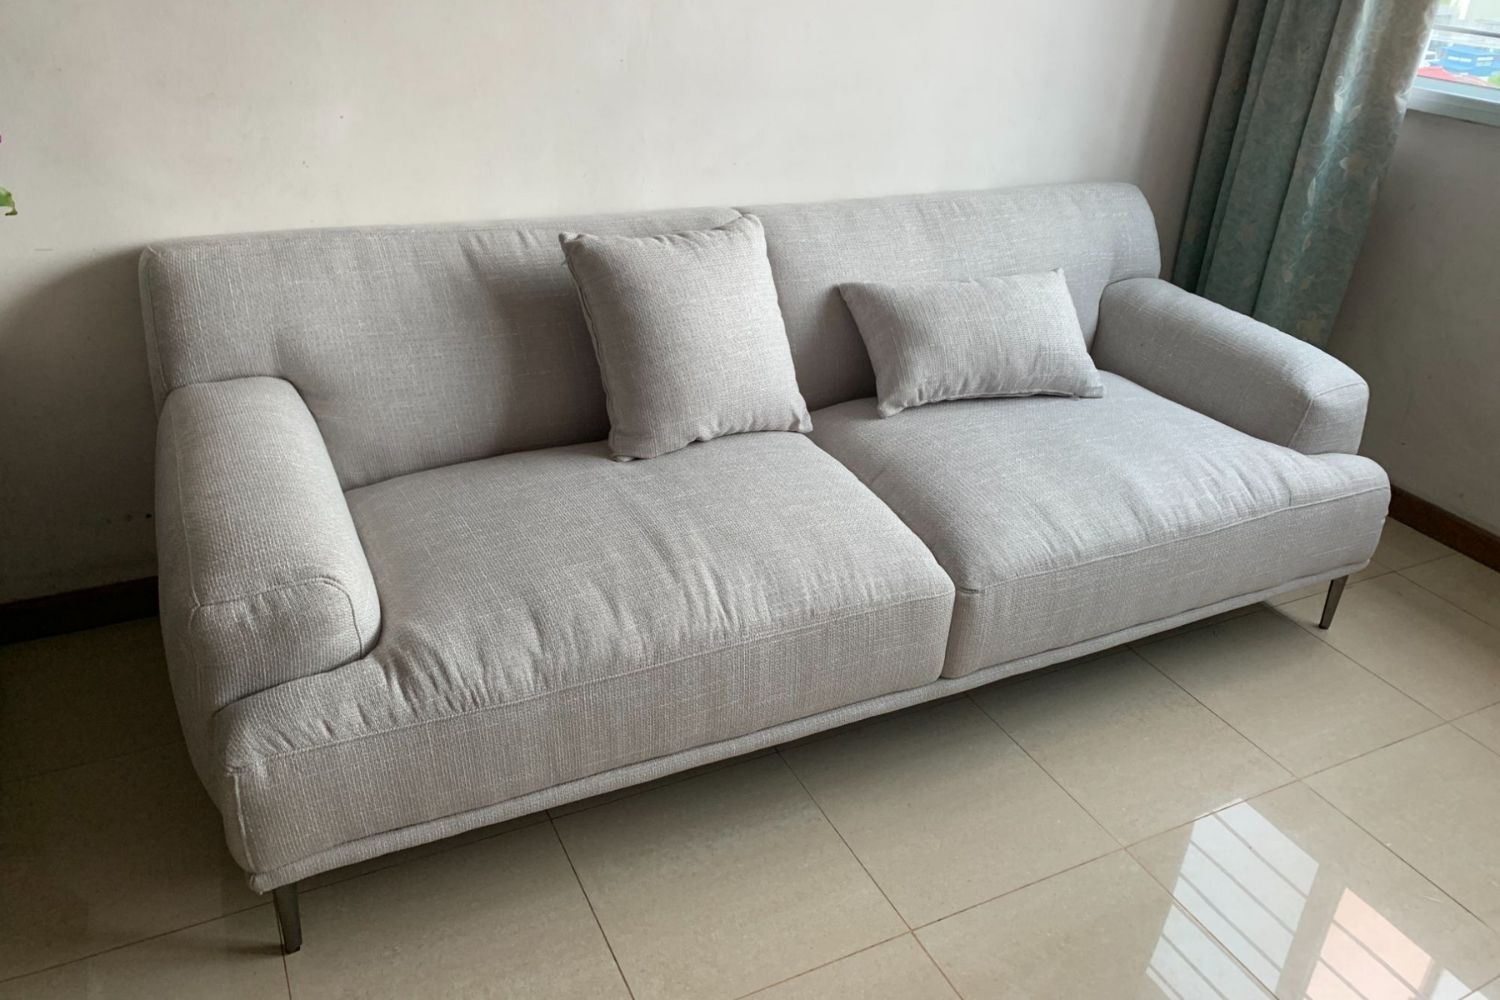 Crystal grey fabric sofa 2.1m